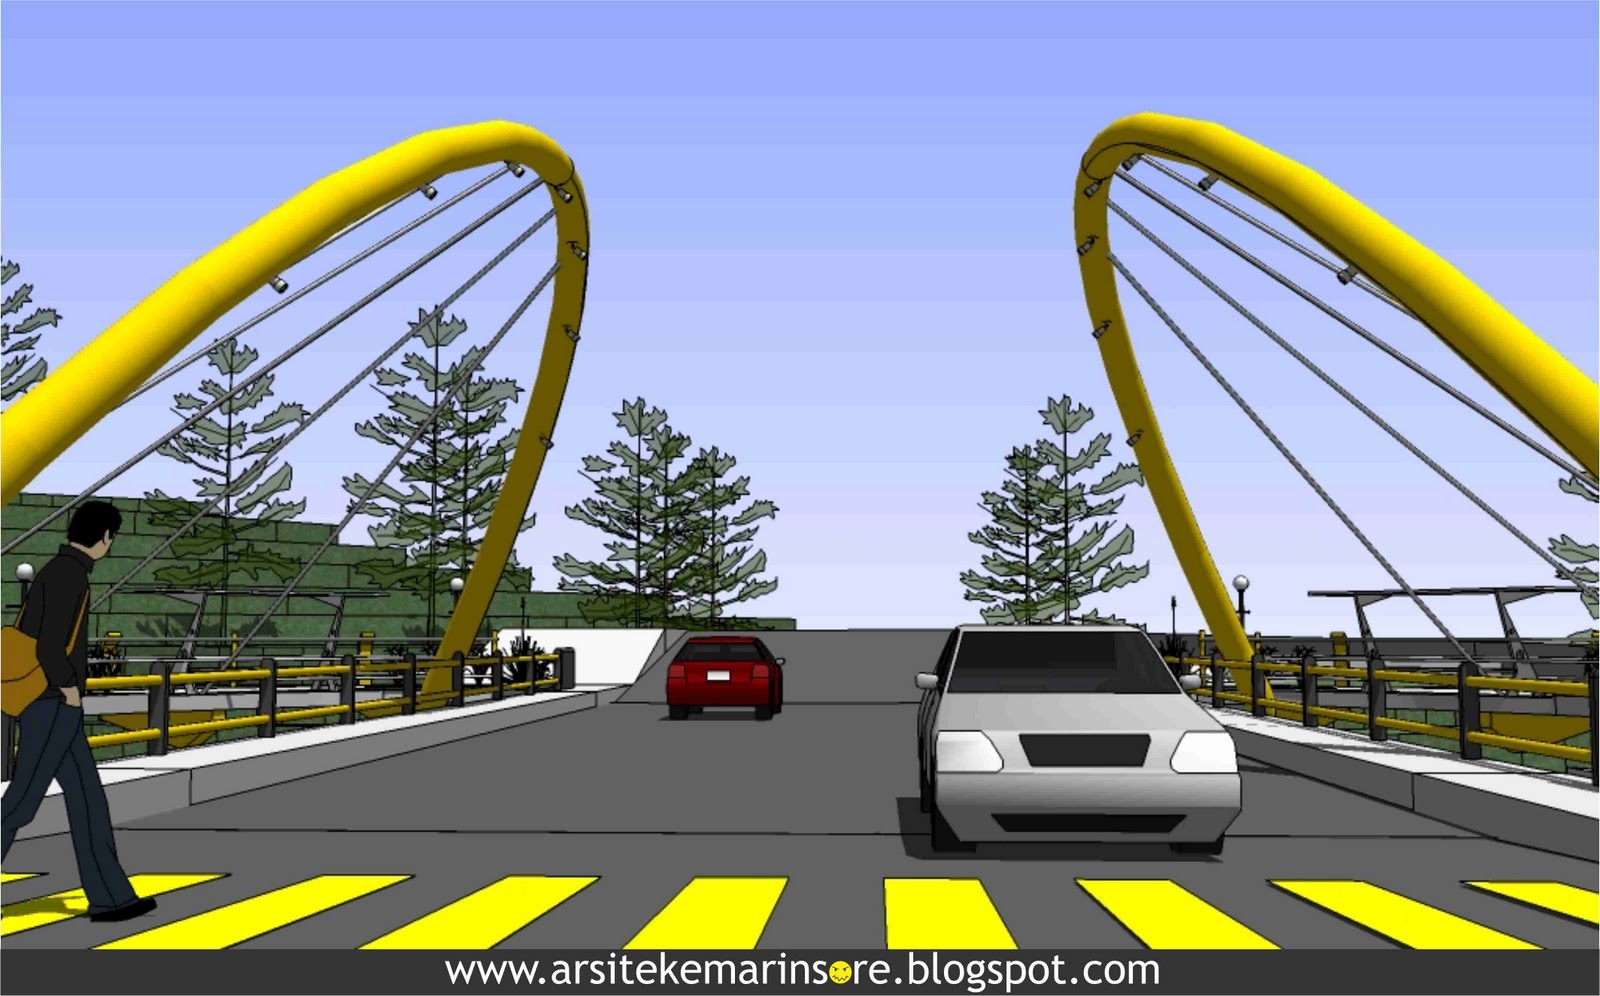 Arsitekemarinsore Desain Sayembara Siliwangi Pedestrian Bridge 2011